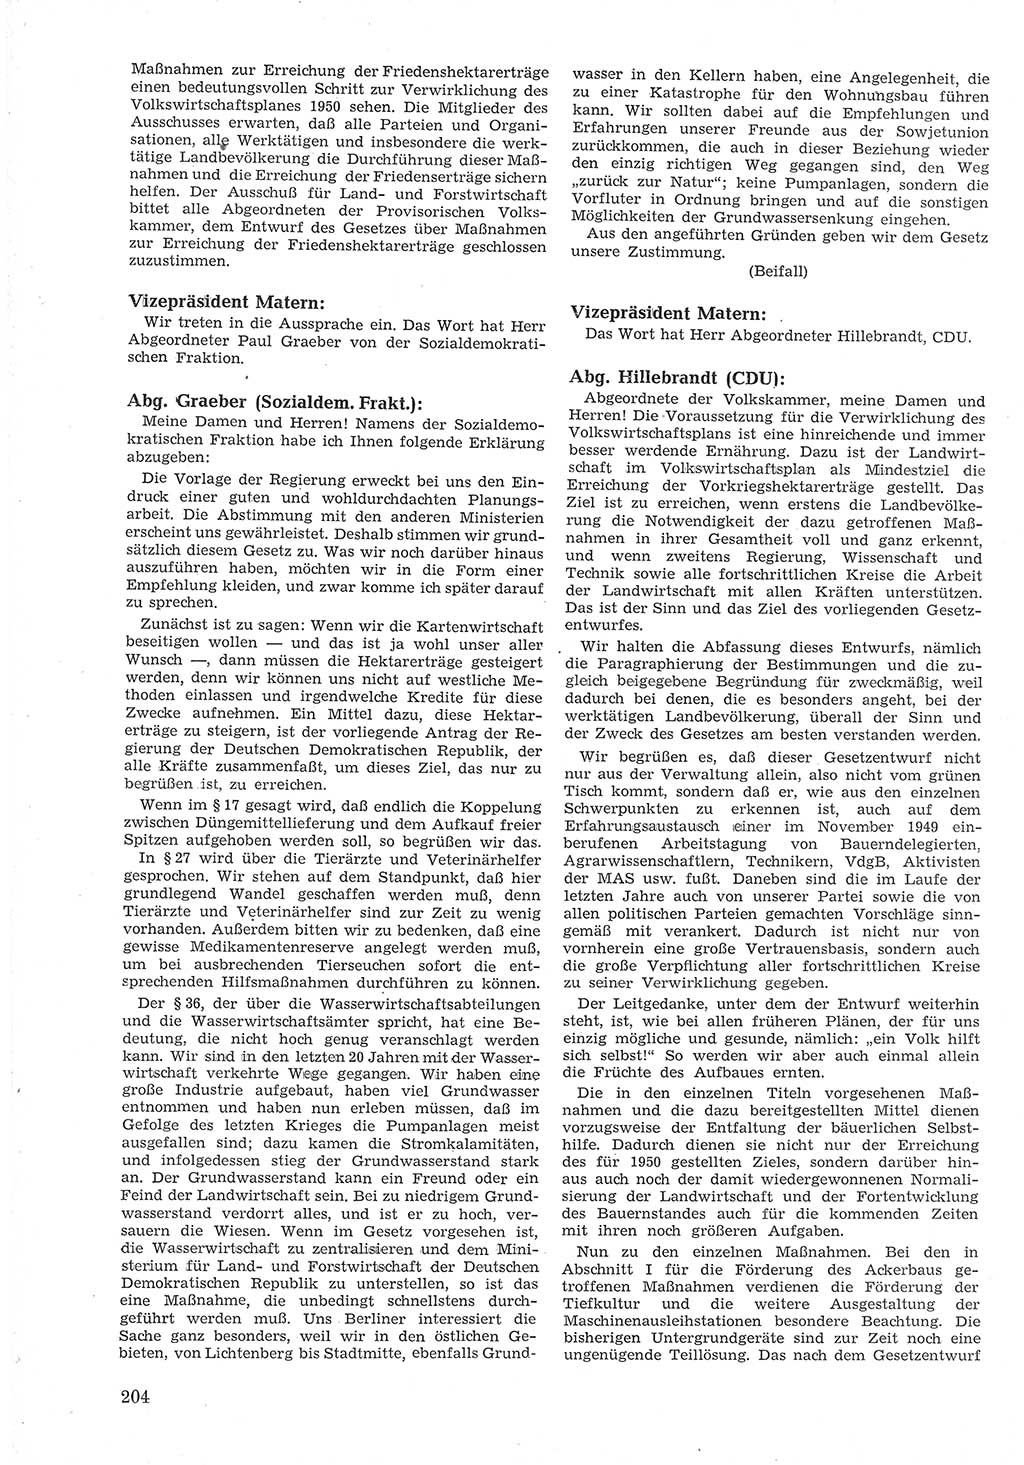 Provisorische Volkskammer (VK) der Deutschen Demokratischen Republik (DDR) 1949-1950, Dokument 216 (Prov. VK DDR 1949-1950, Dok. 216)